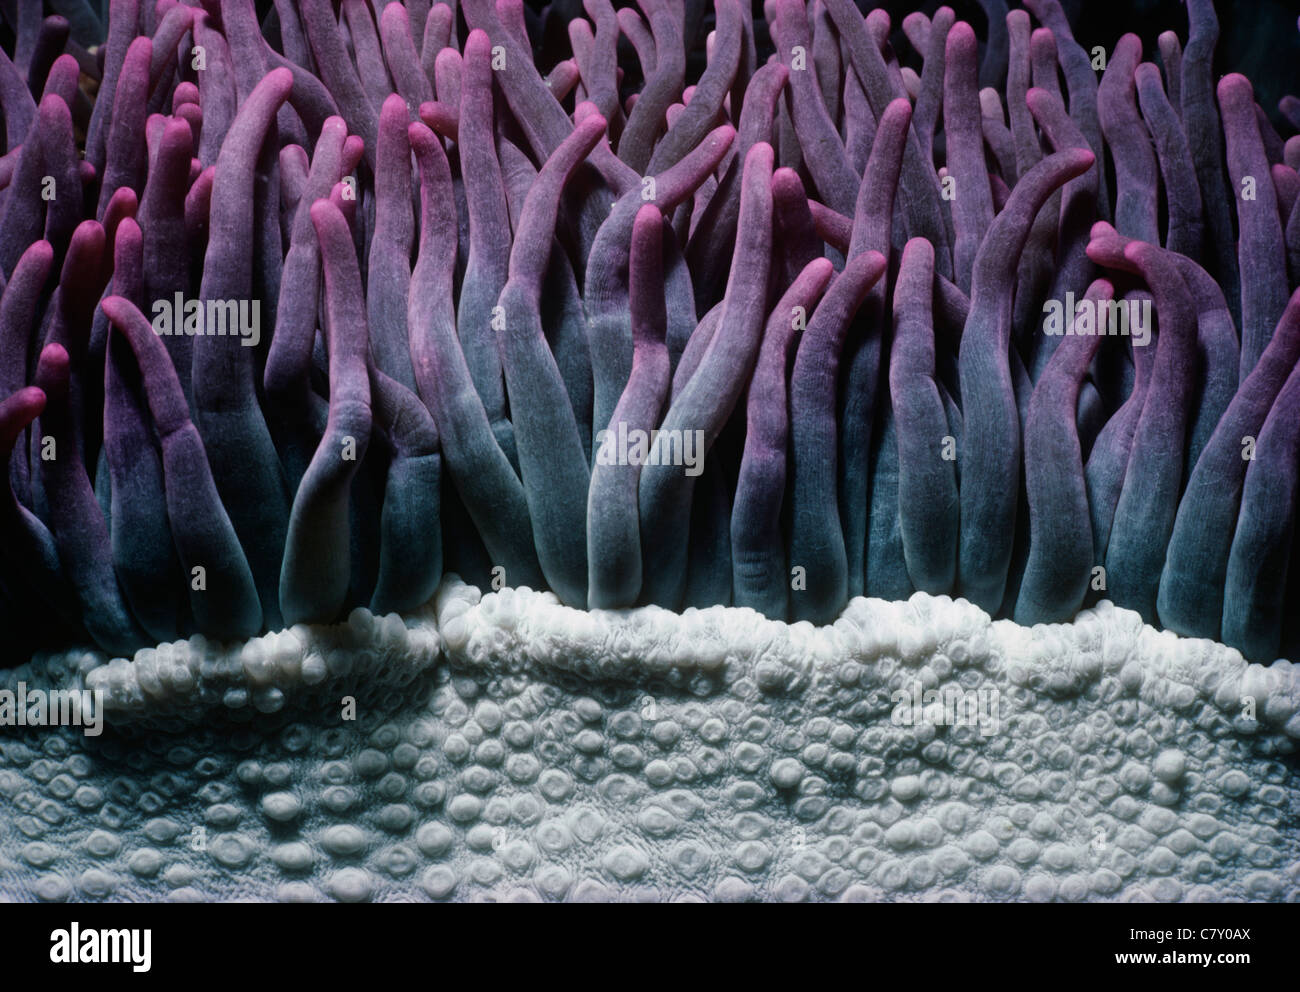 Tentakeln einer riesigen Anemone (Condylactis Gigantea). Palau-Inseln, Mikronesien - westlichen Pazifischen Ozean Stockfoto